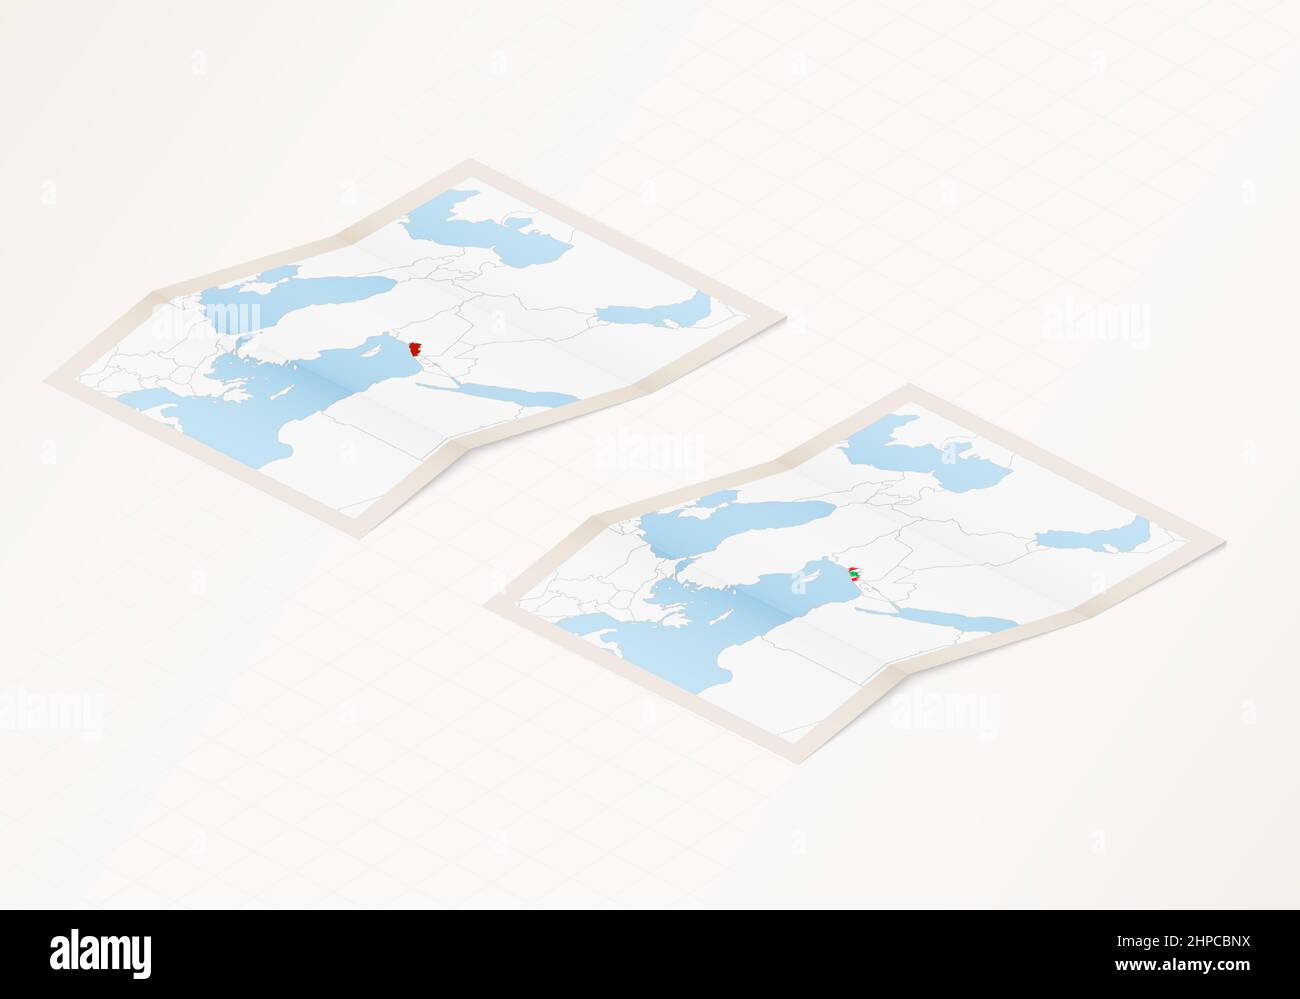 Deux versions d'une carte pliée du Liban avec le drapeau du pays du Liban et la couleur rouge mise en évidence. Ensemble de cartes vectorielles isométriques. Illustration de Vecteur